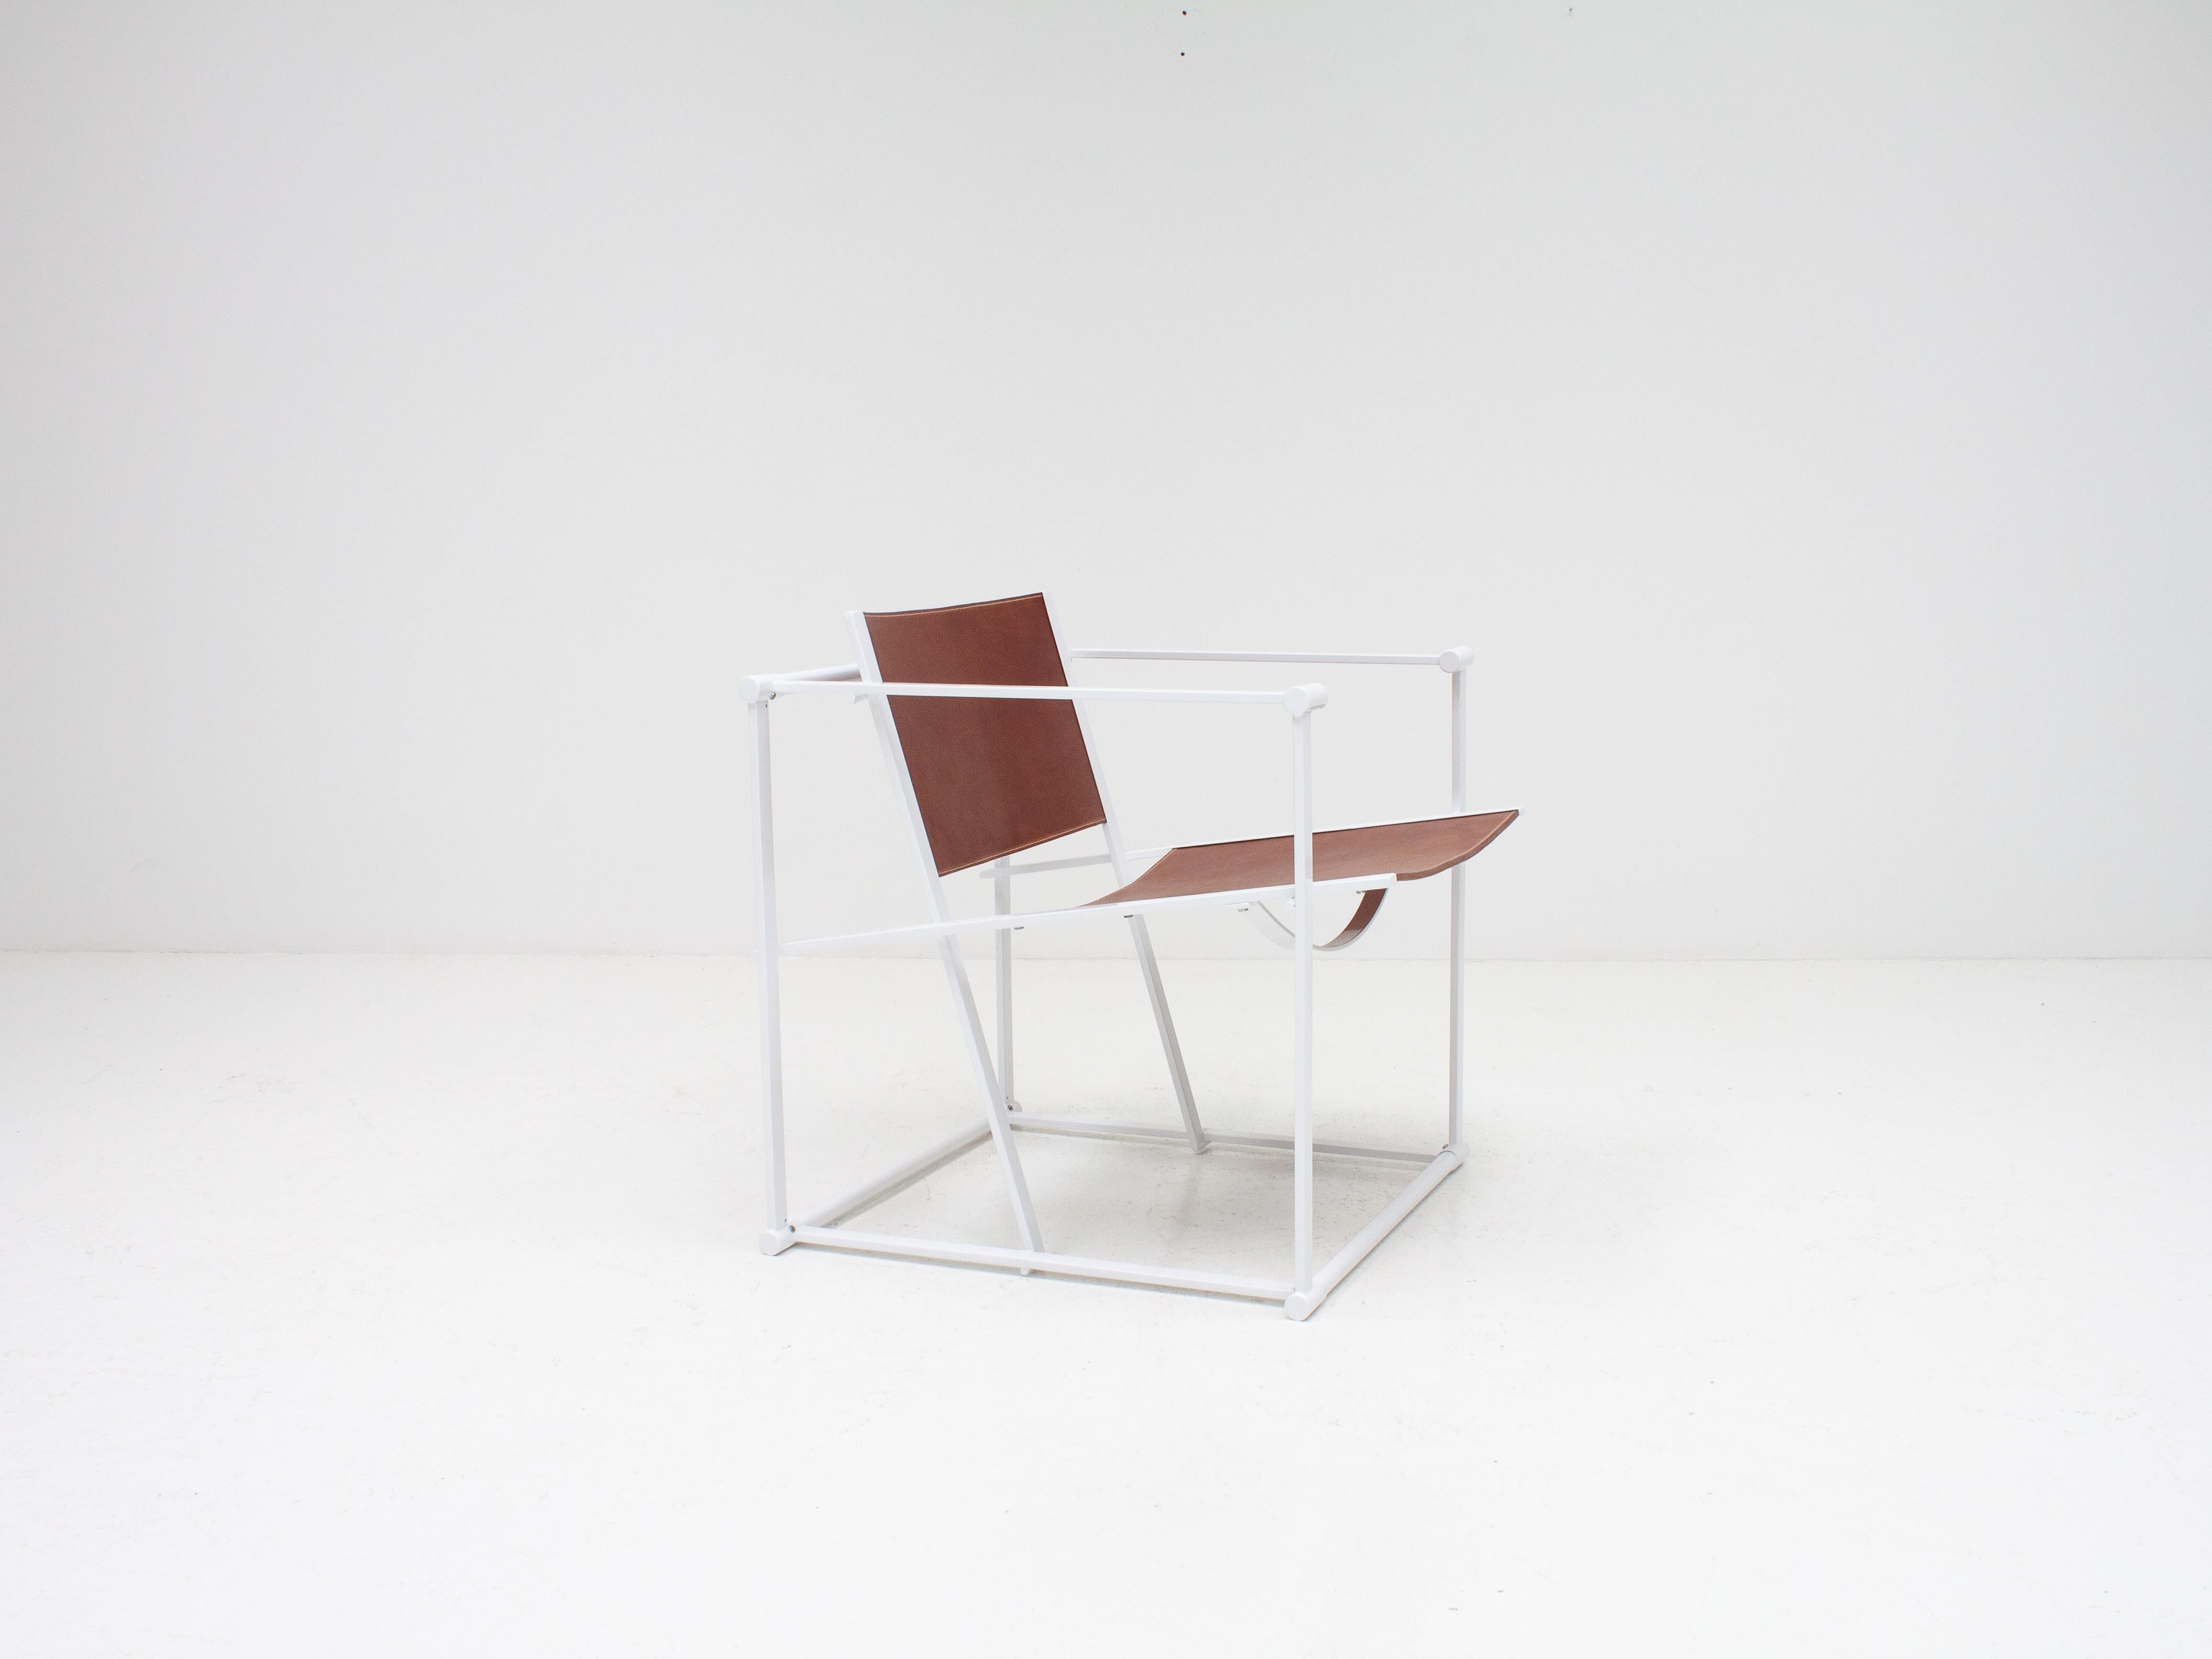 Radboud Van Beekum FM62 Steel & Leather Chair for Pastoe, 1980s 1